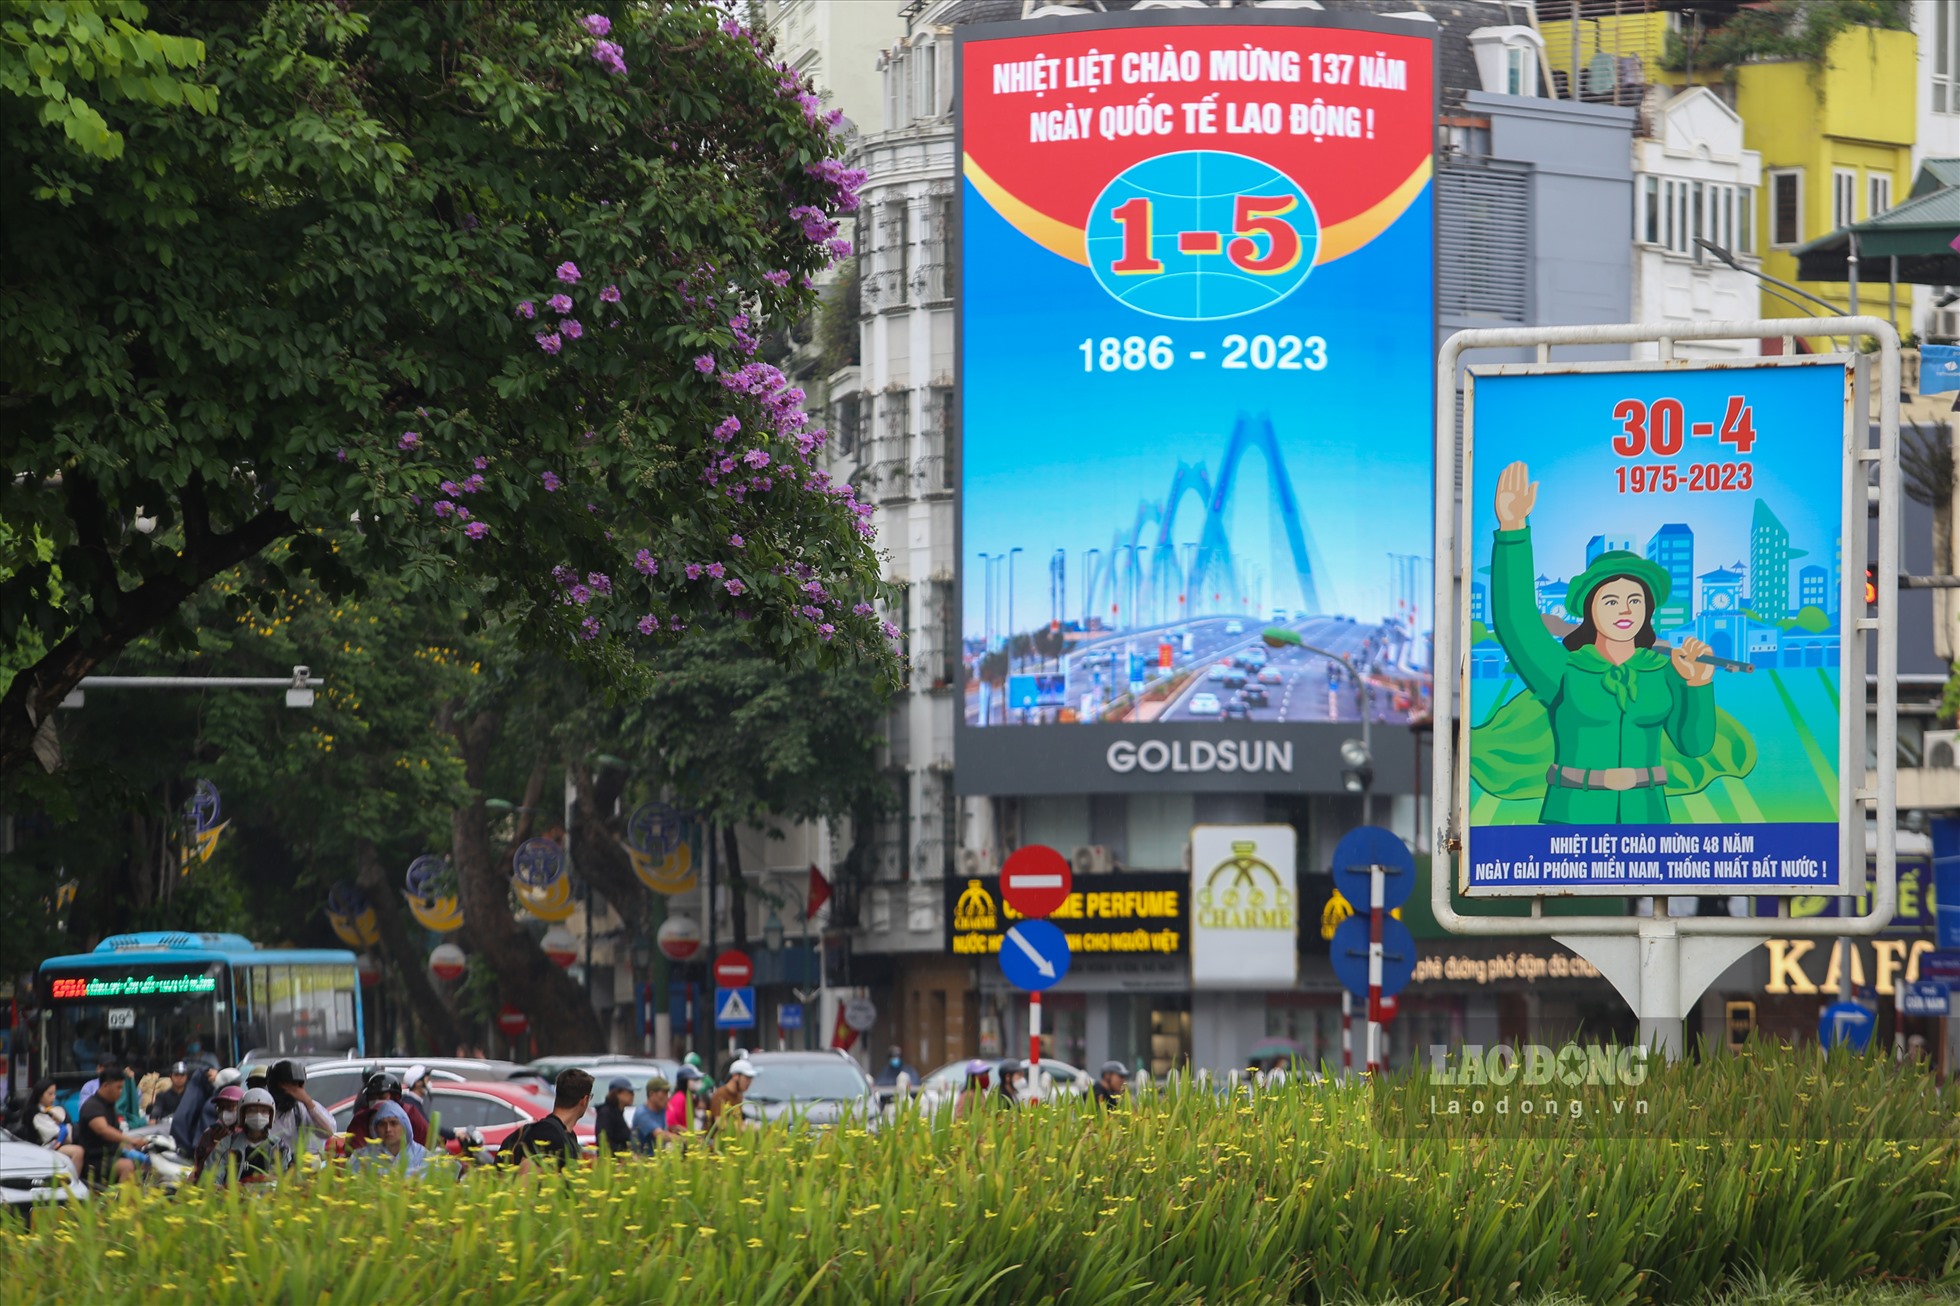 Chào mừng 48 năm Ngày Giải phóng miền Nam, thống nhất đất nước 30.4, 137 năm Ngày Quốc tế Lao động 1.5 và 69 năm Chiến thắng lịch sử Điện Biên Phủ, cờ hoa, biểu ngữ, áp phích chào mừng được trang hoàng trên nhiều tuyến đường của Thủ đô Hà Nội.